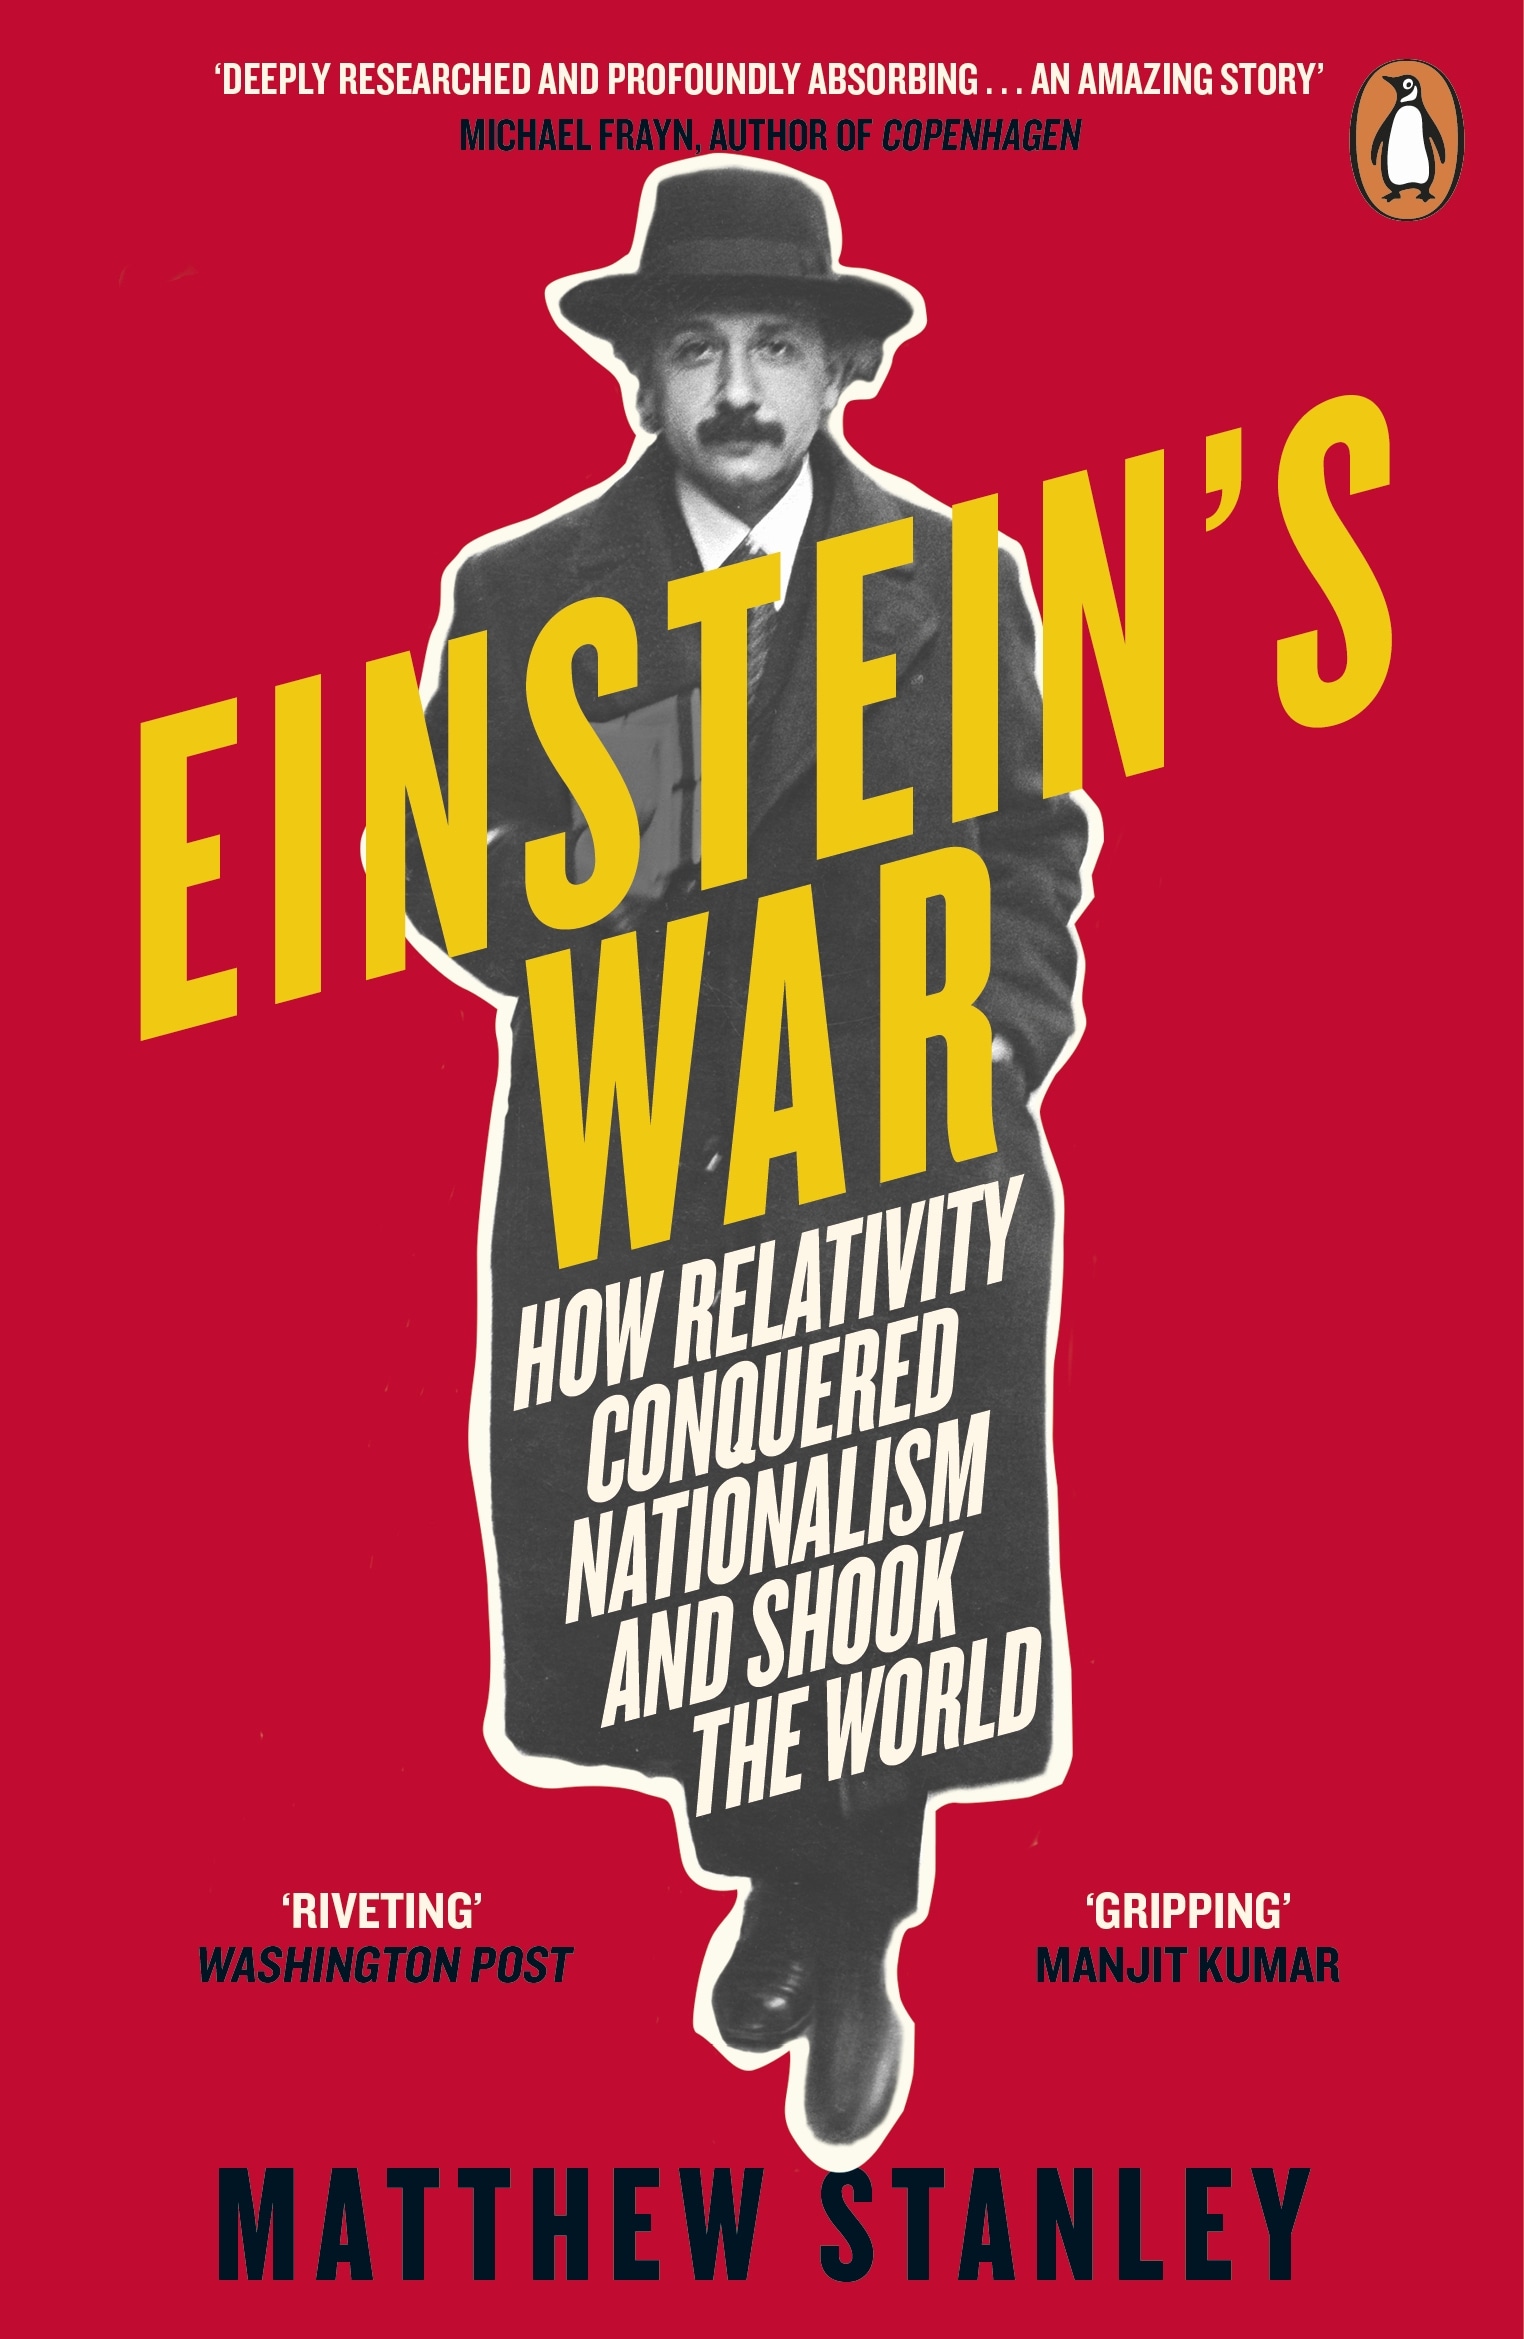 Book “Einstein's War” by Matthew Stanley — October 8, 2020